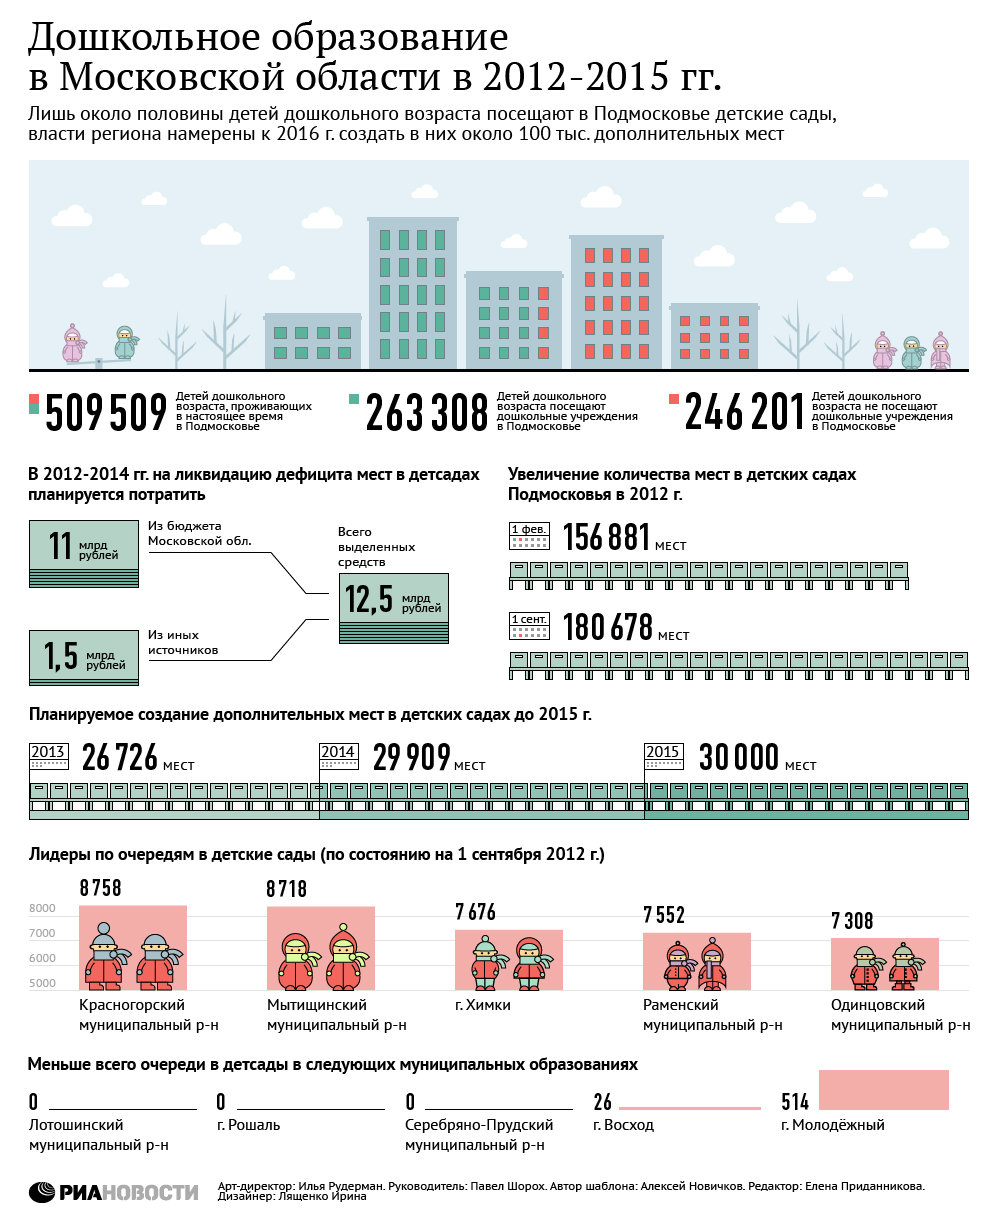 Дошкольное образование в Московской области в 2012-2015 году